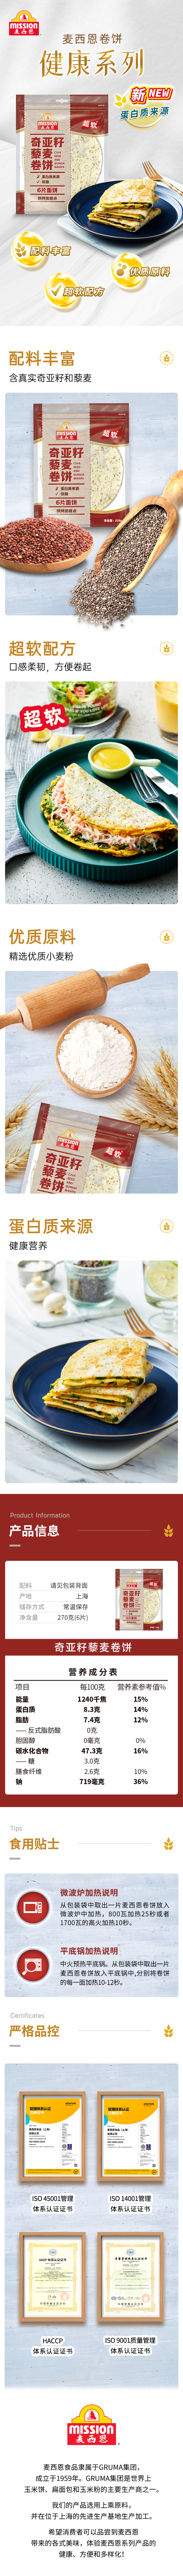 奇亚籽藜麦卷饼270g.jpg